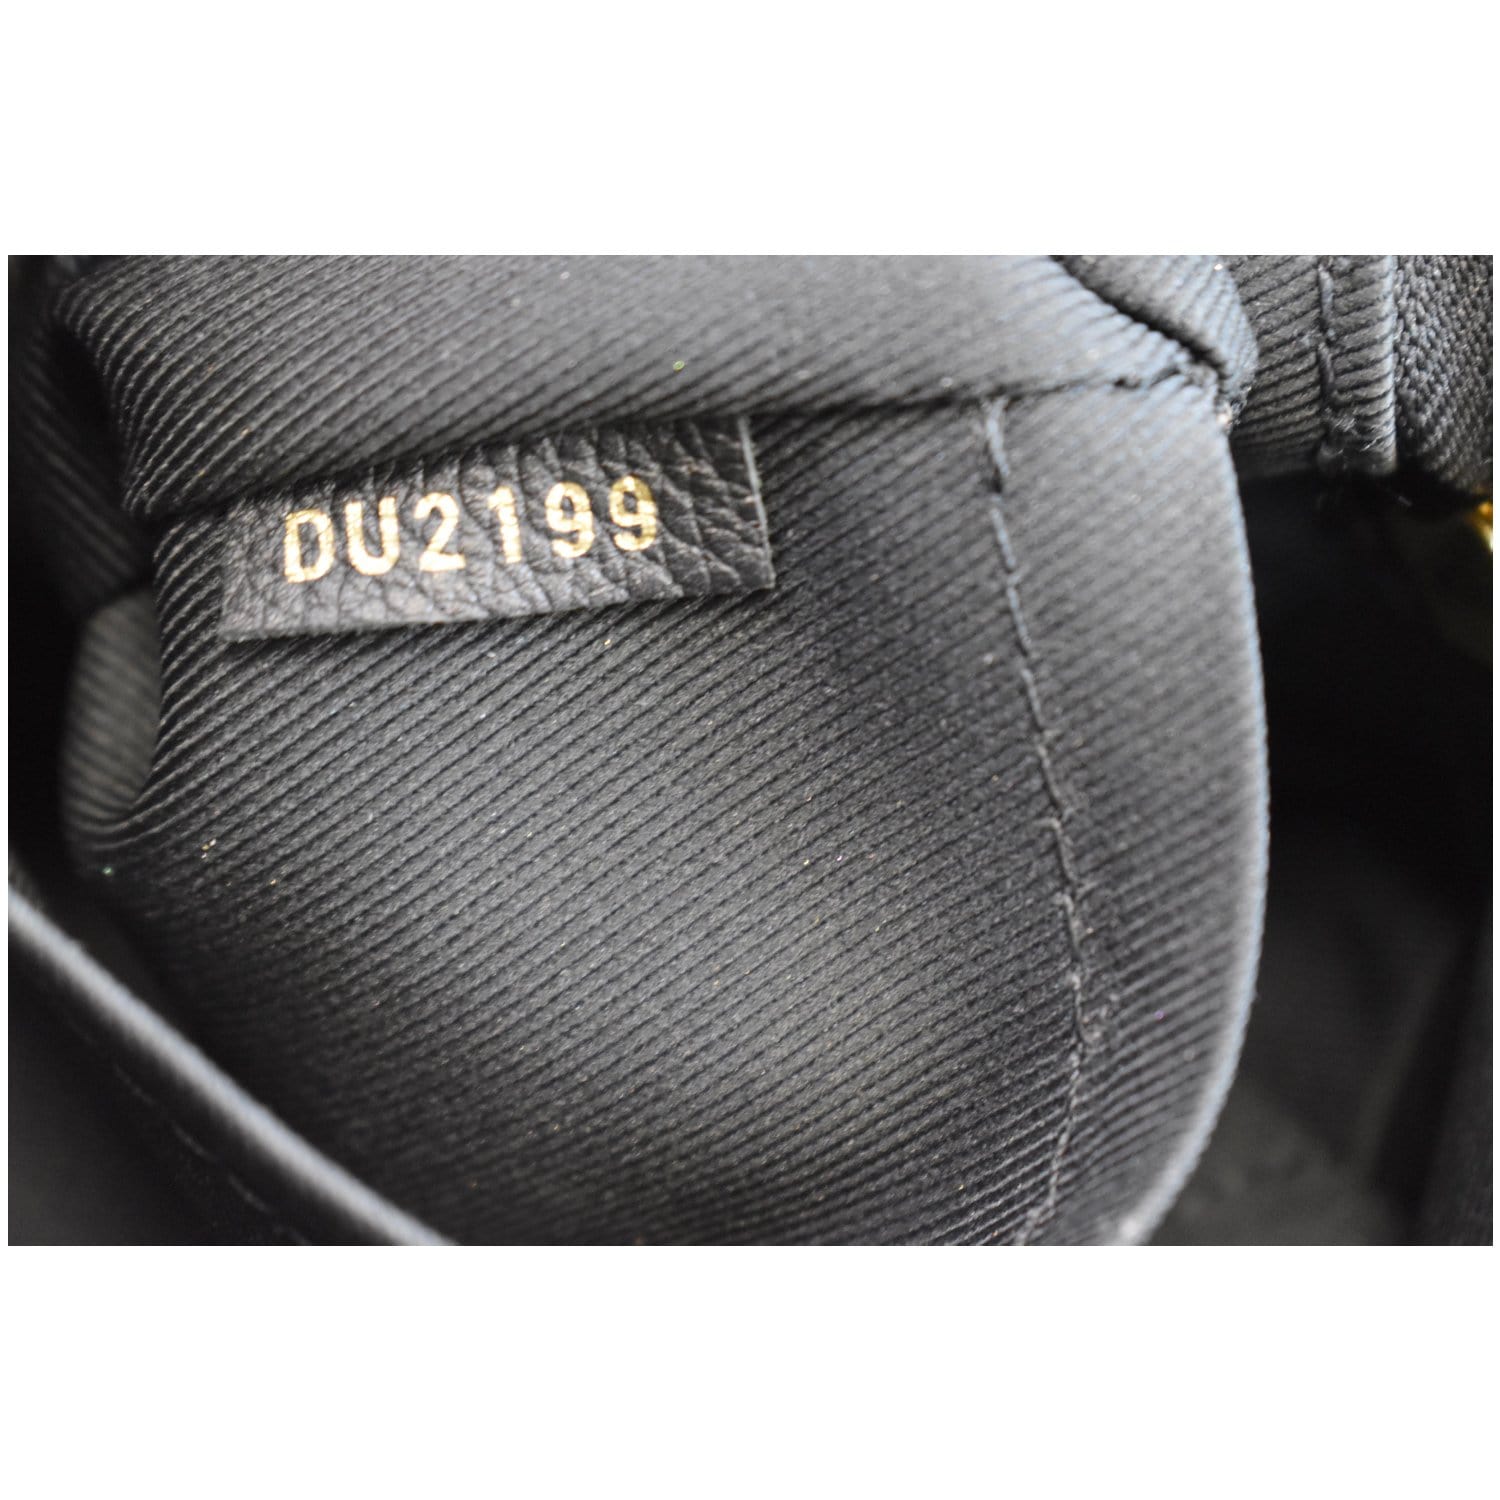 LOUIS VUITTON Ponthieu MM Monogram Empreinte Leather Shoulder Bag Blac